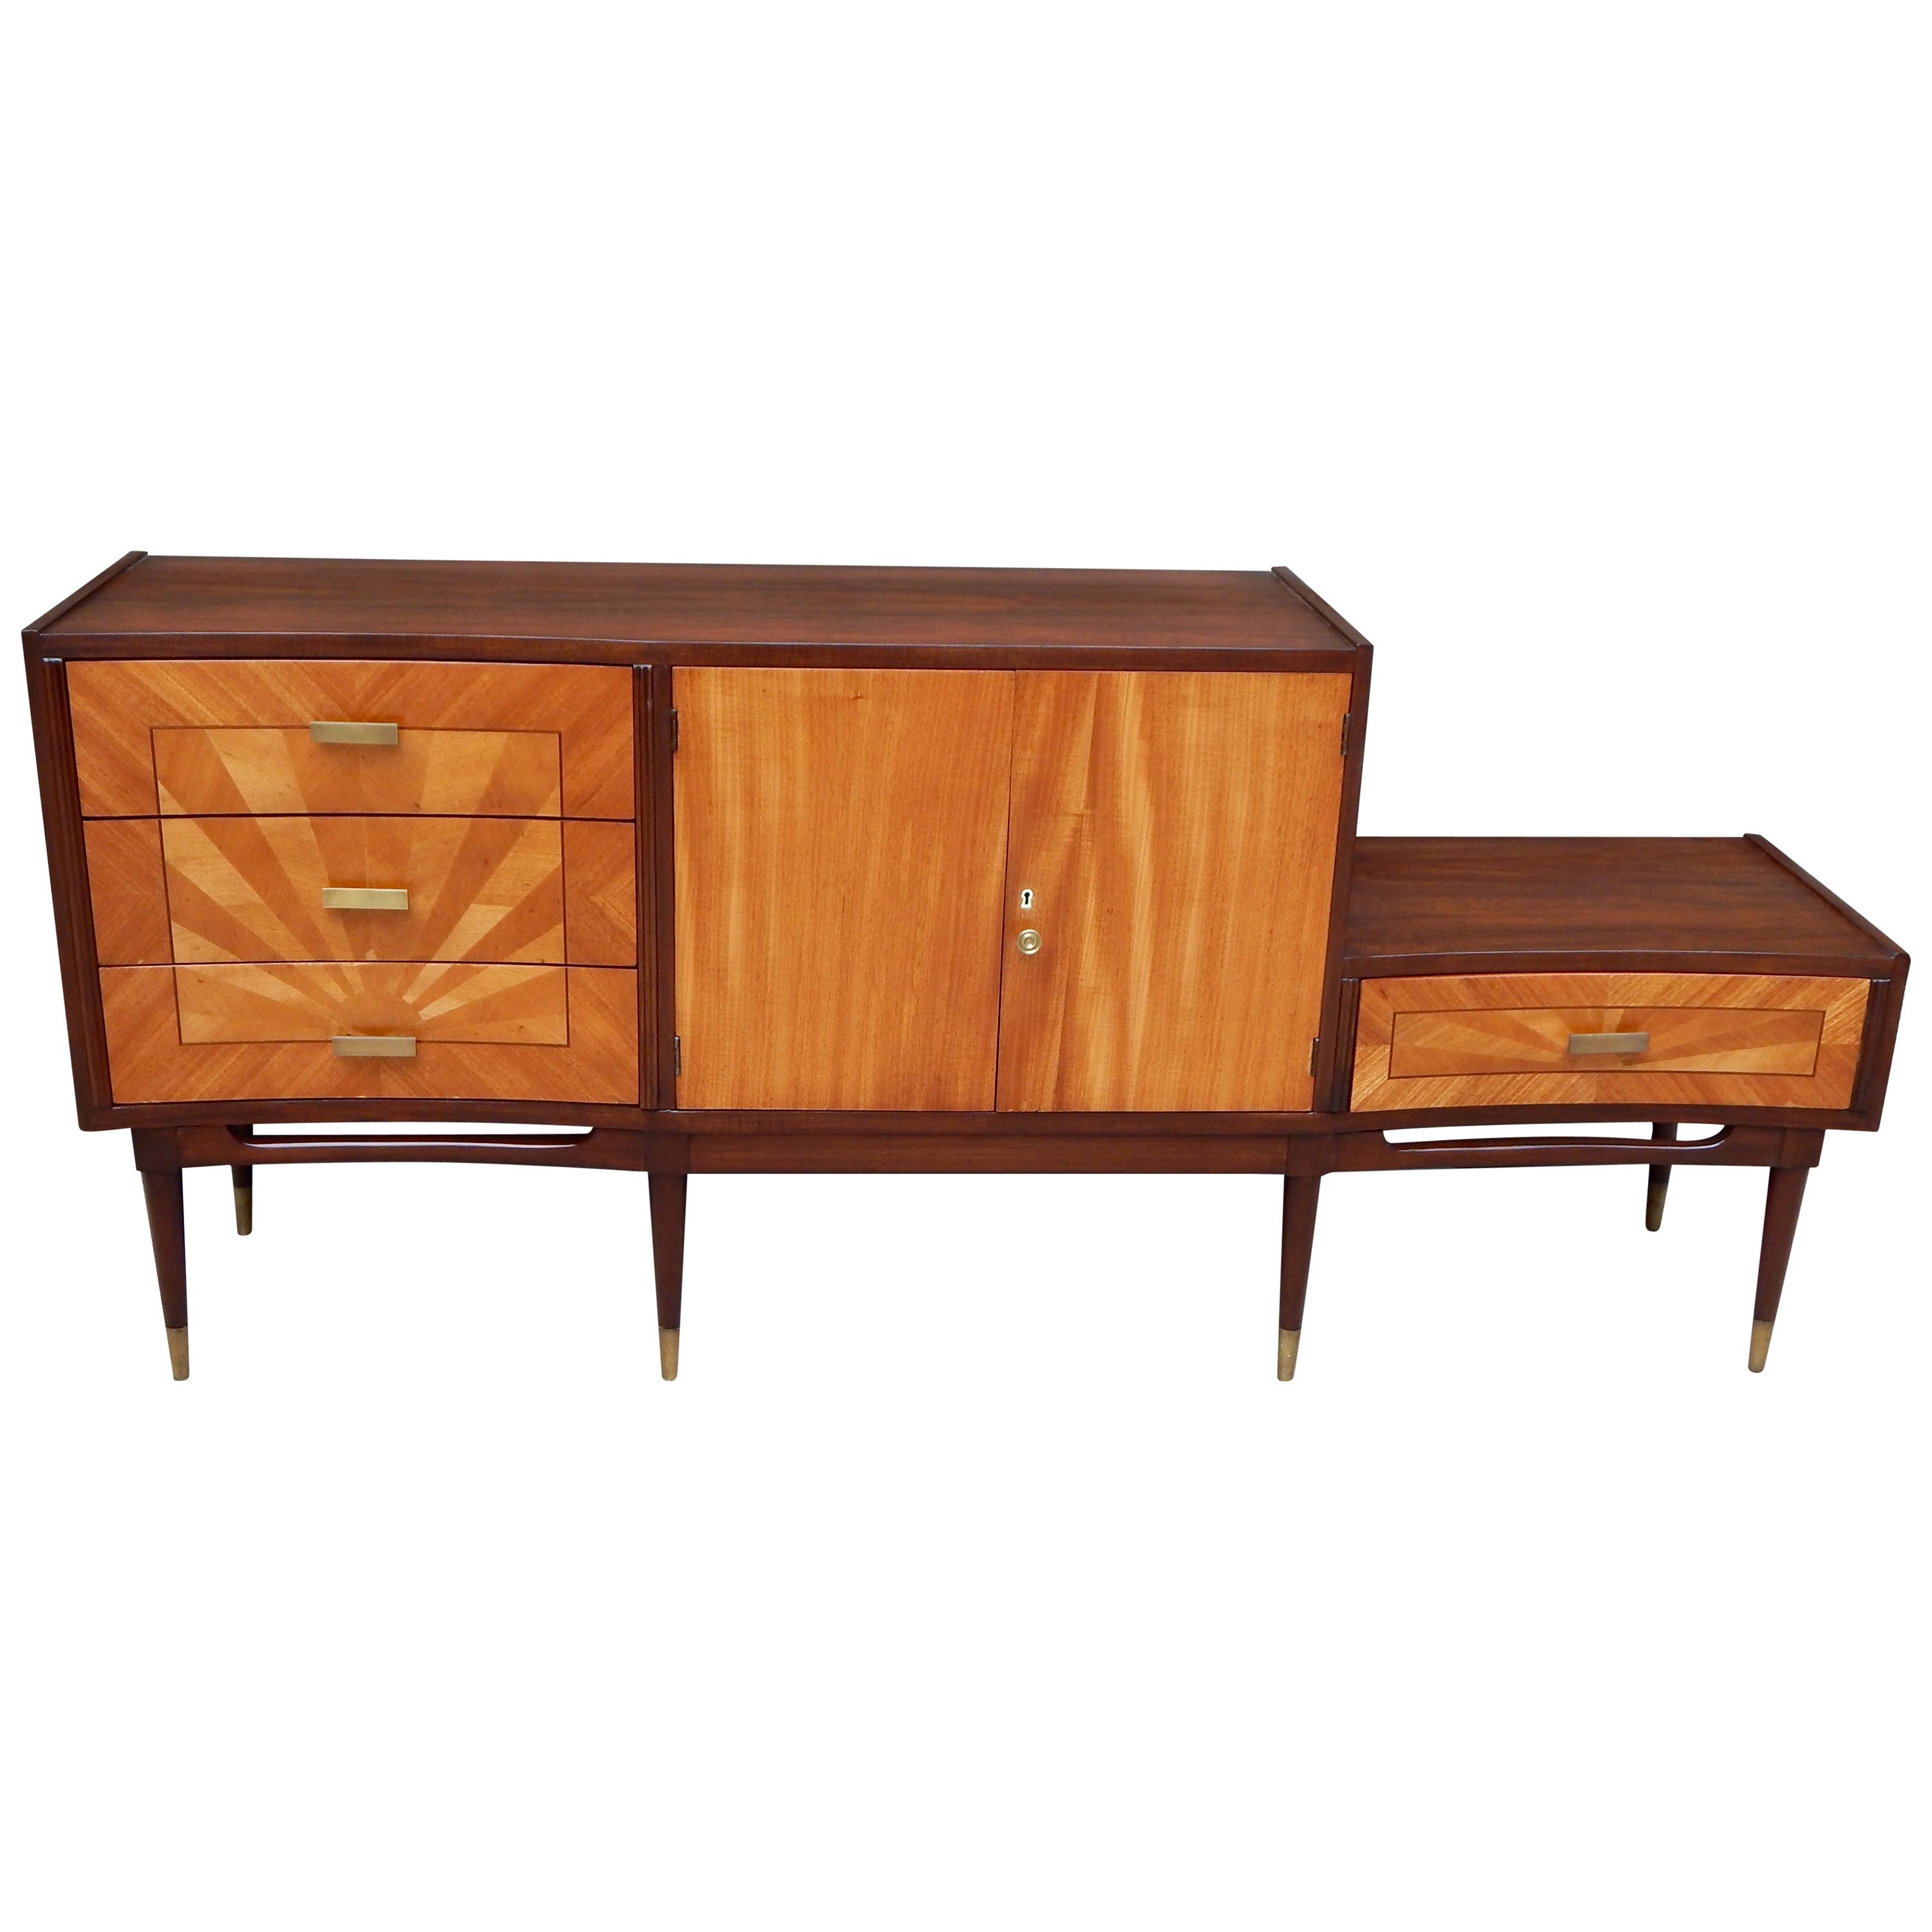 Argentine Mid-Century Modern Storage Cabinet or Dresser